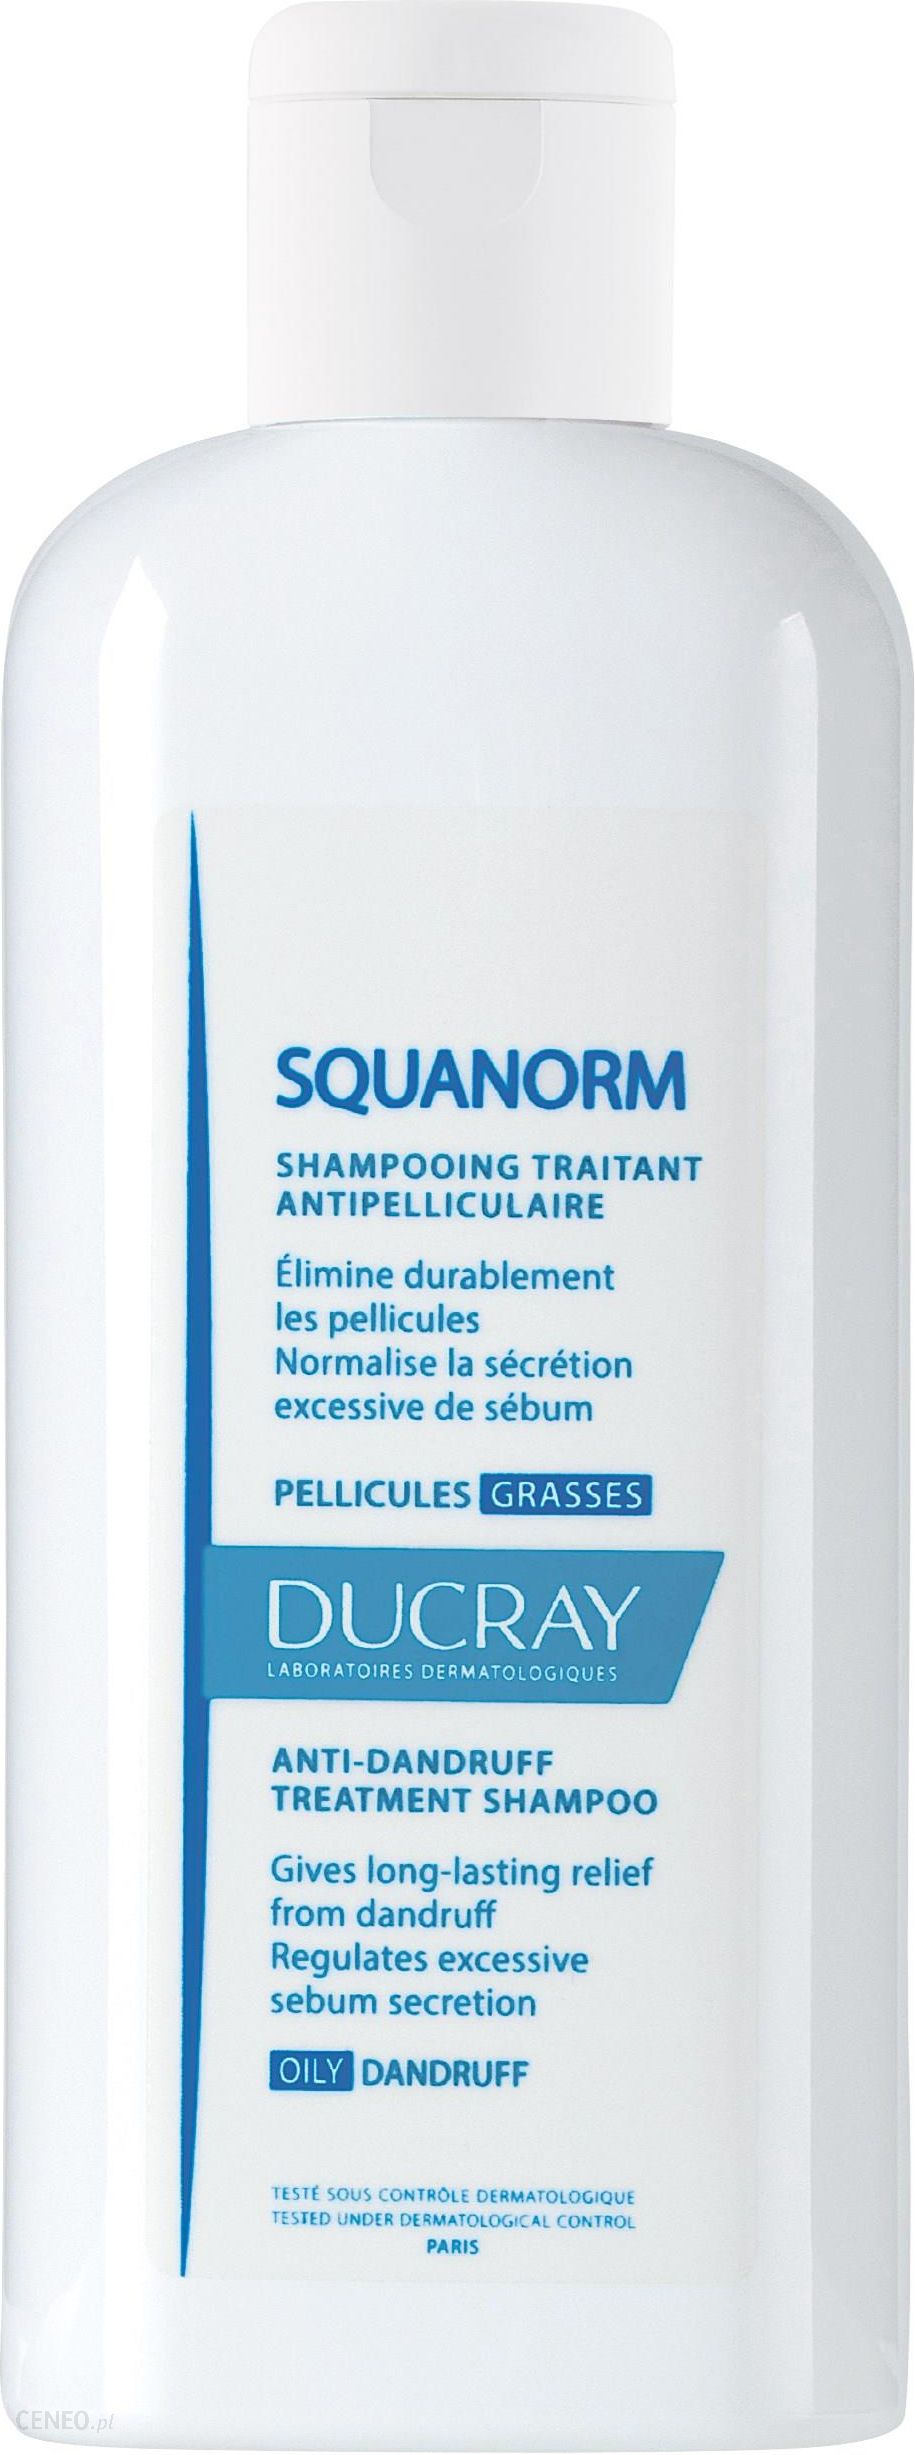 szampon squanorm ceneo